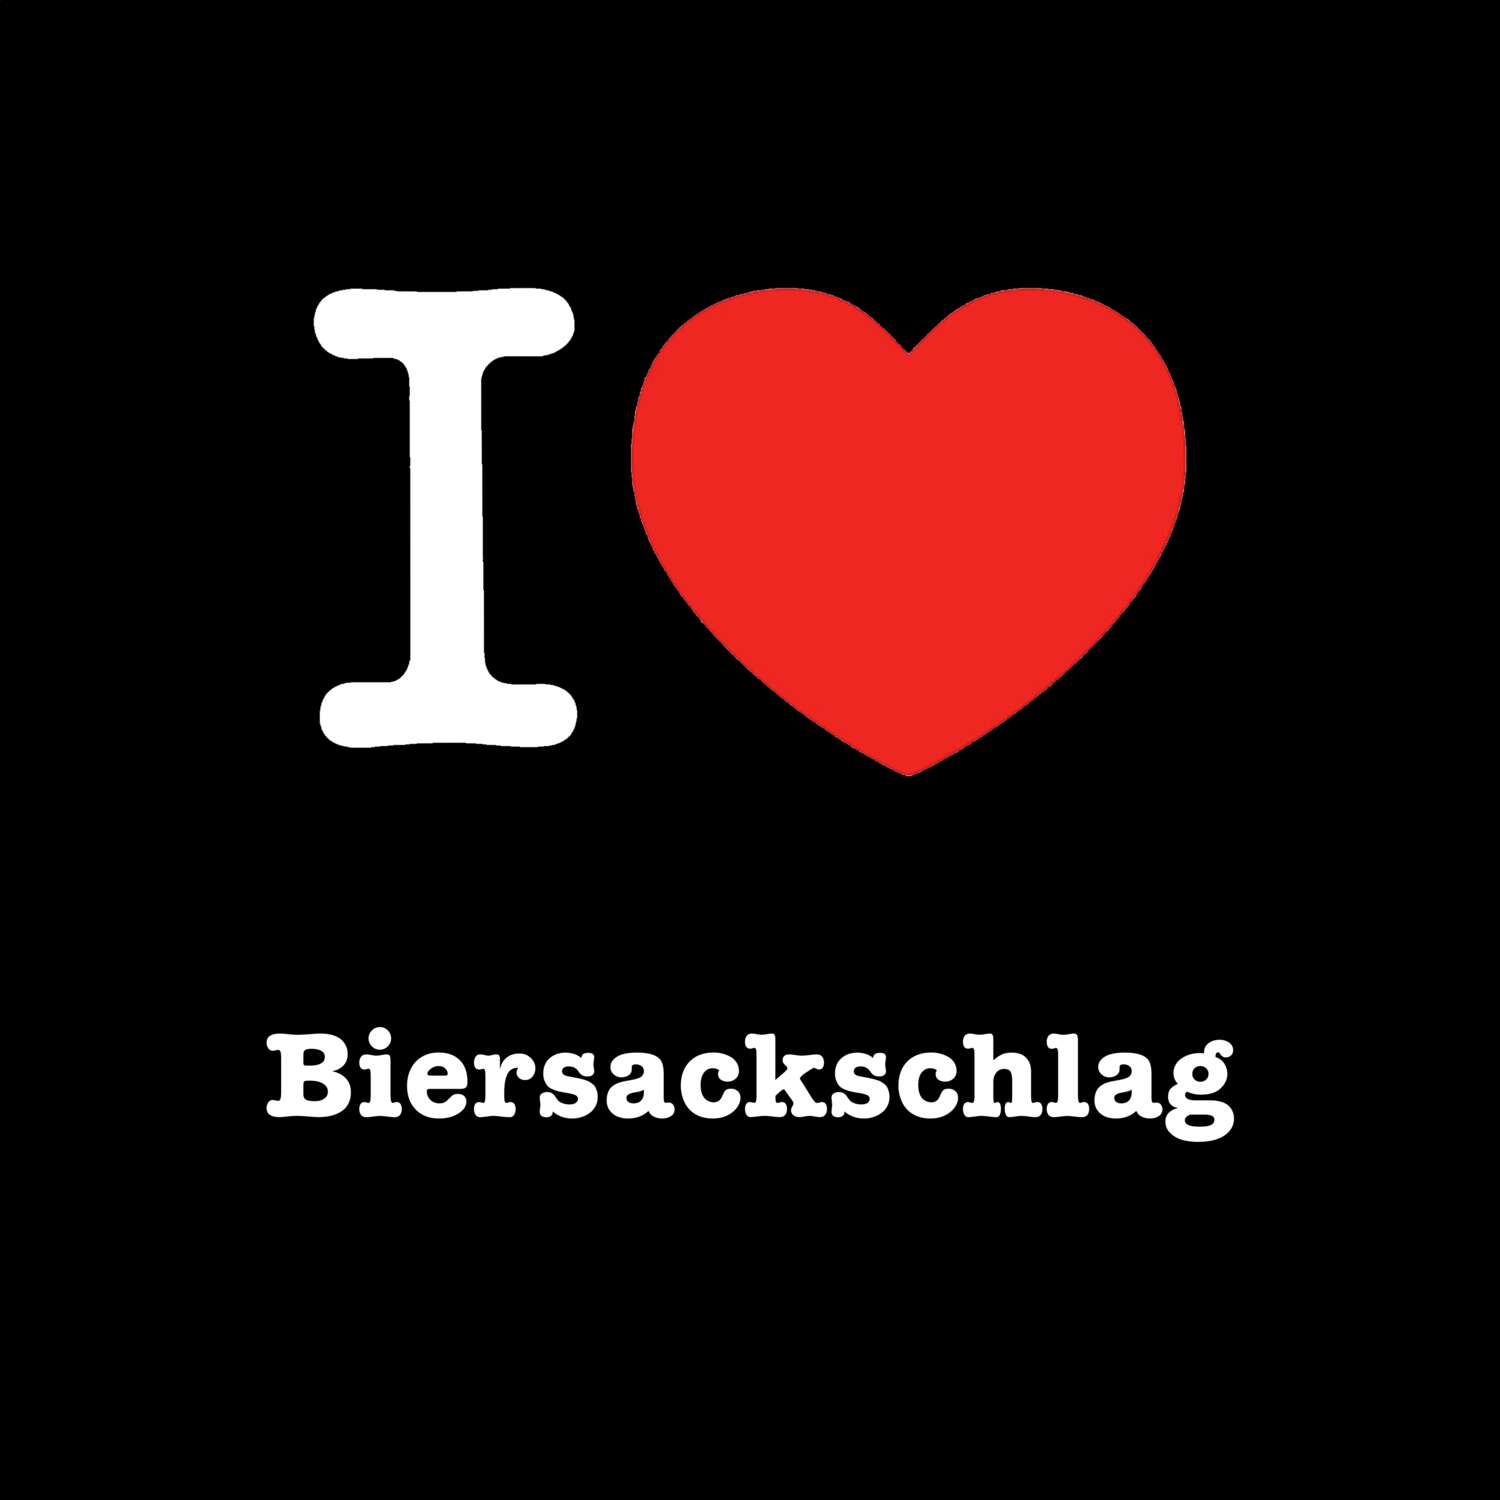 Biersackschlag T-Shirt »I love«